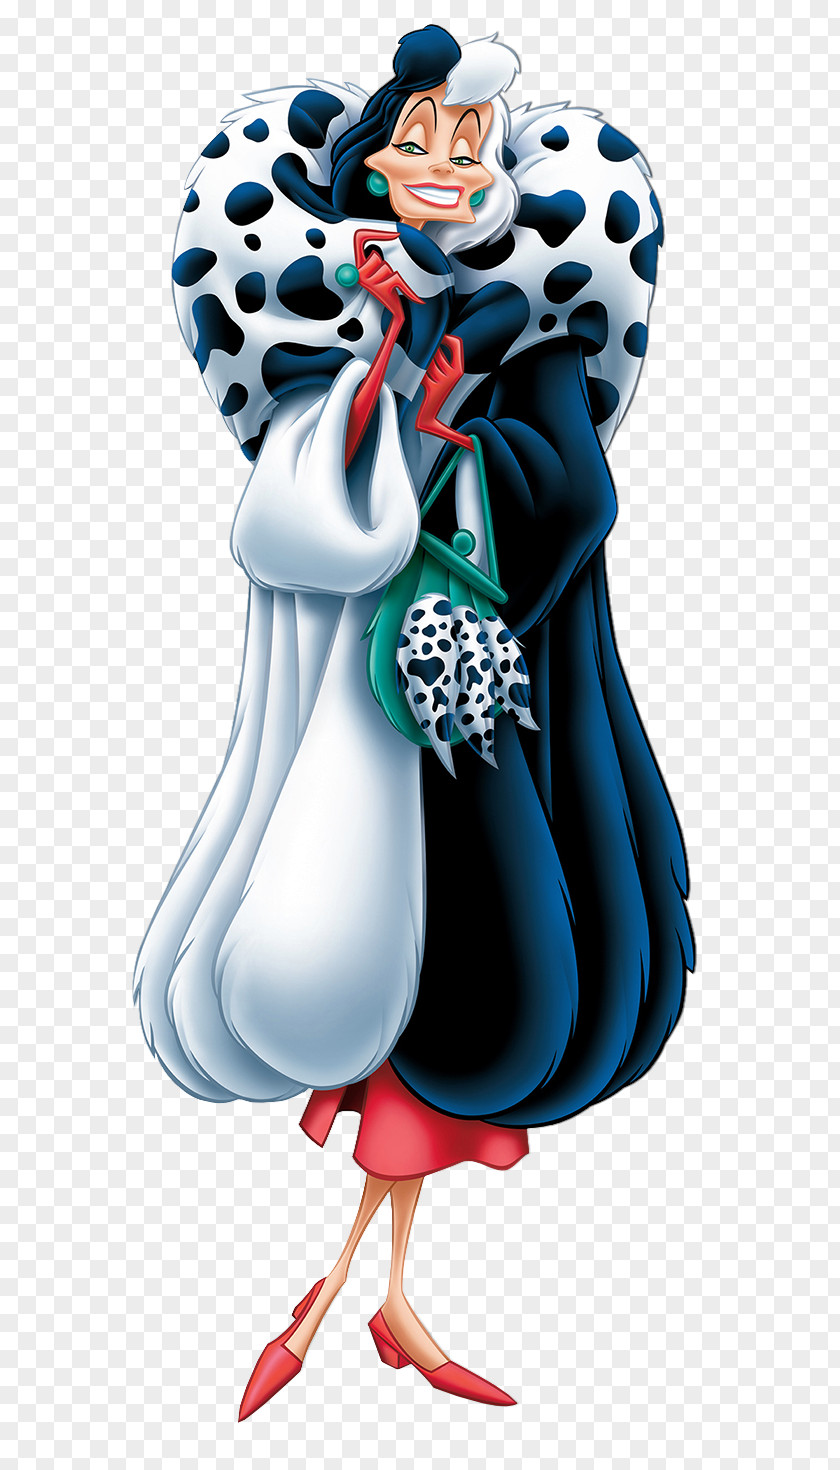 Cruella De Vil 101 Dalmatians Transparent Clip Art Image Dalmatian Dog Captain Hook The Walt Disney Company Jasper PNG